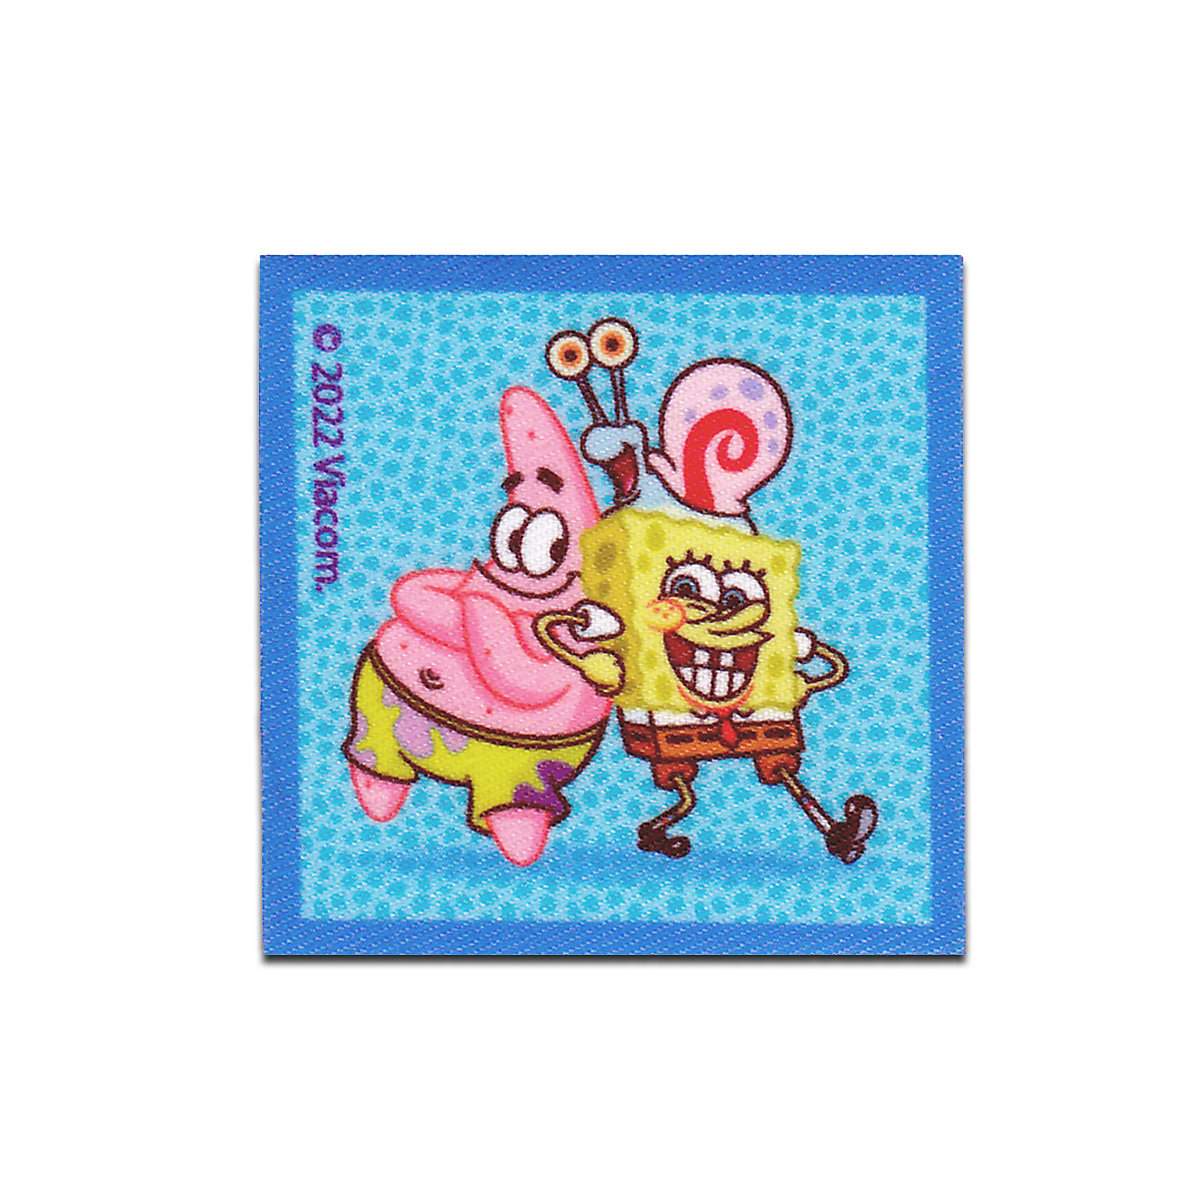 Aufnäher / Bügelbild SpongeBob Schwammkopf Patrick Garry gedruckt Nähsets für Kinder